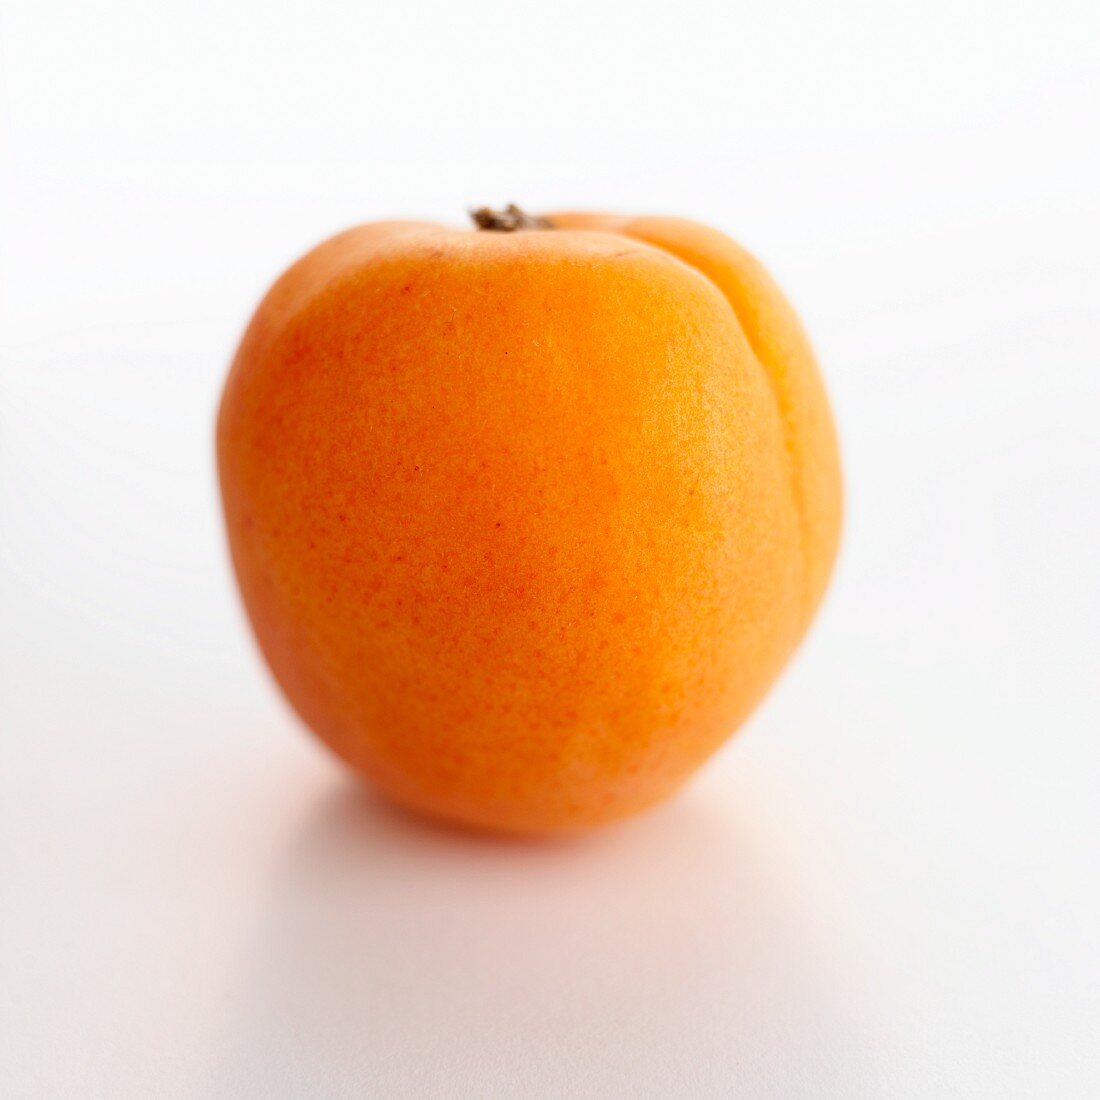 An apricot